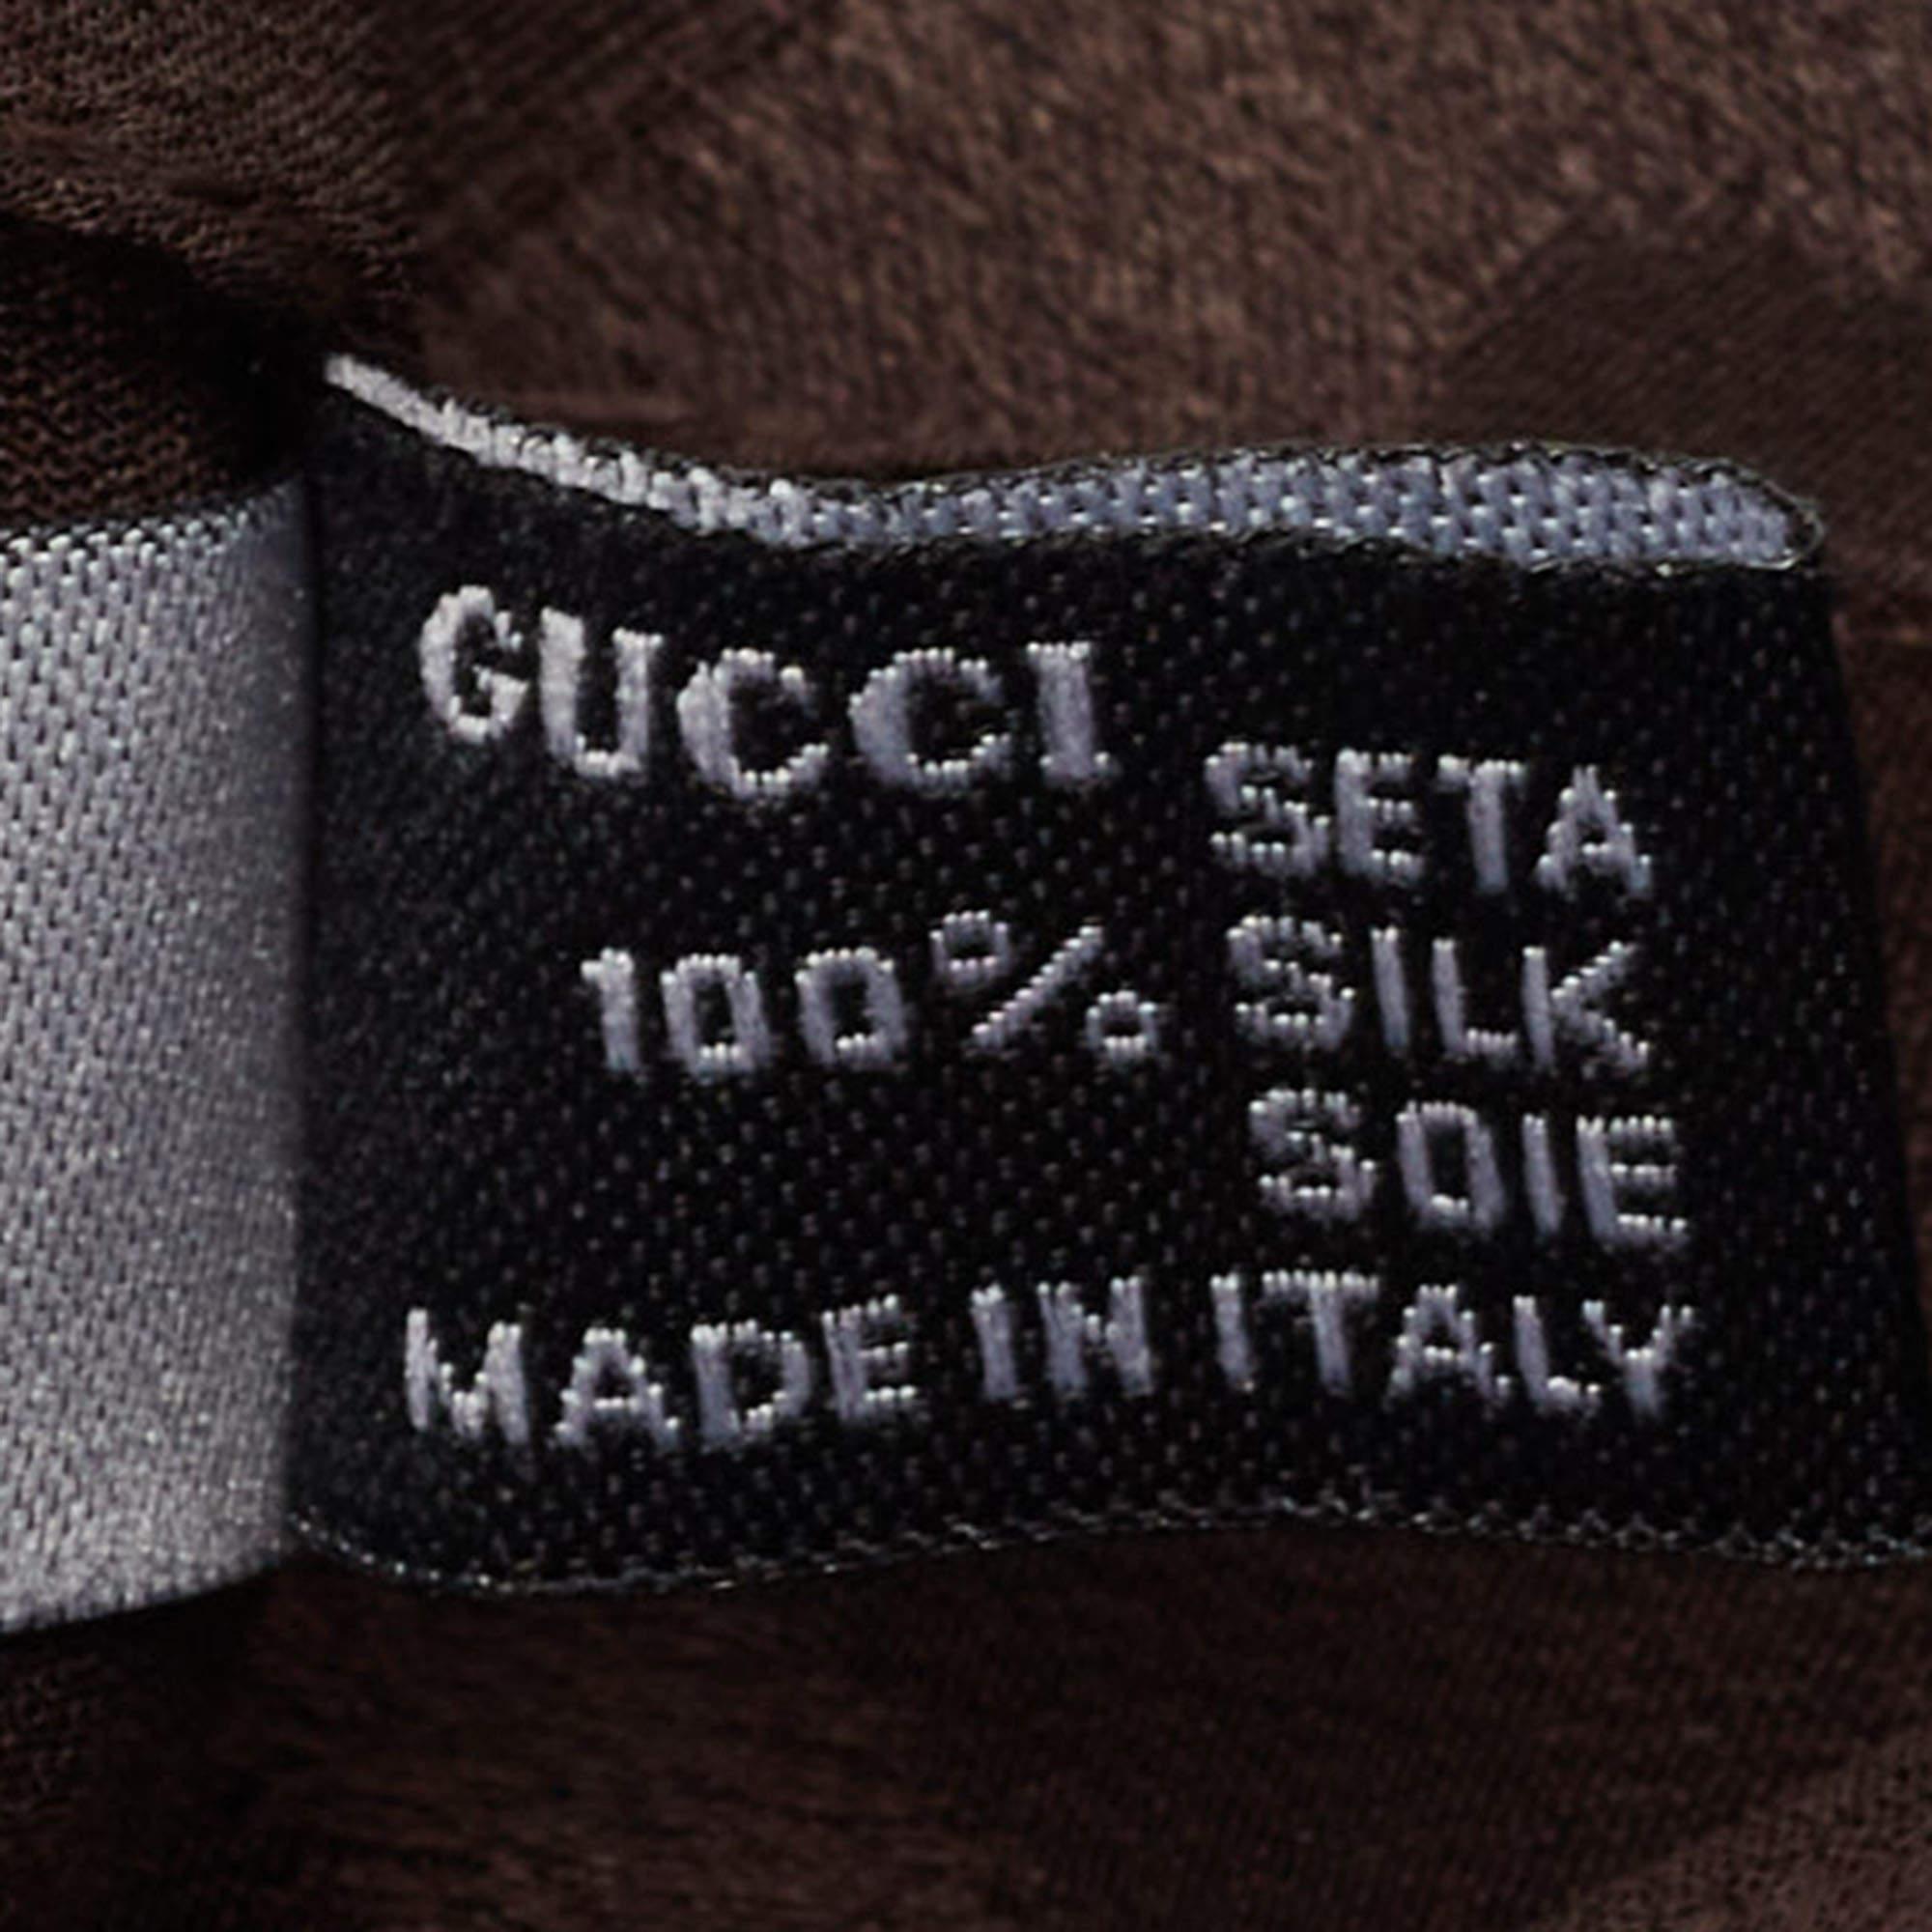 Die Gucci Stola ist ein elegantes Modeaccessoire. Es ist aus luxuriöser Seide gefertigt und zeigt das kultige GG-Muster in Brauntönen. Die Stola ist mit zarten Fransen verziert und verleiht jedem Outfit einen Hauch von Raffinesse und